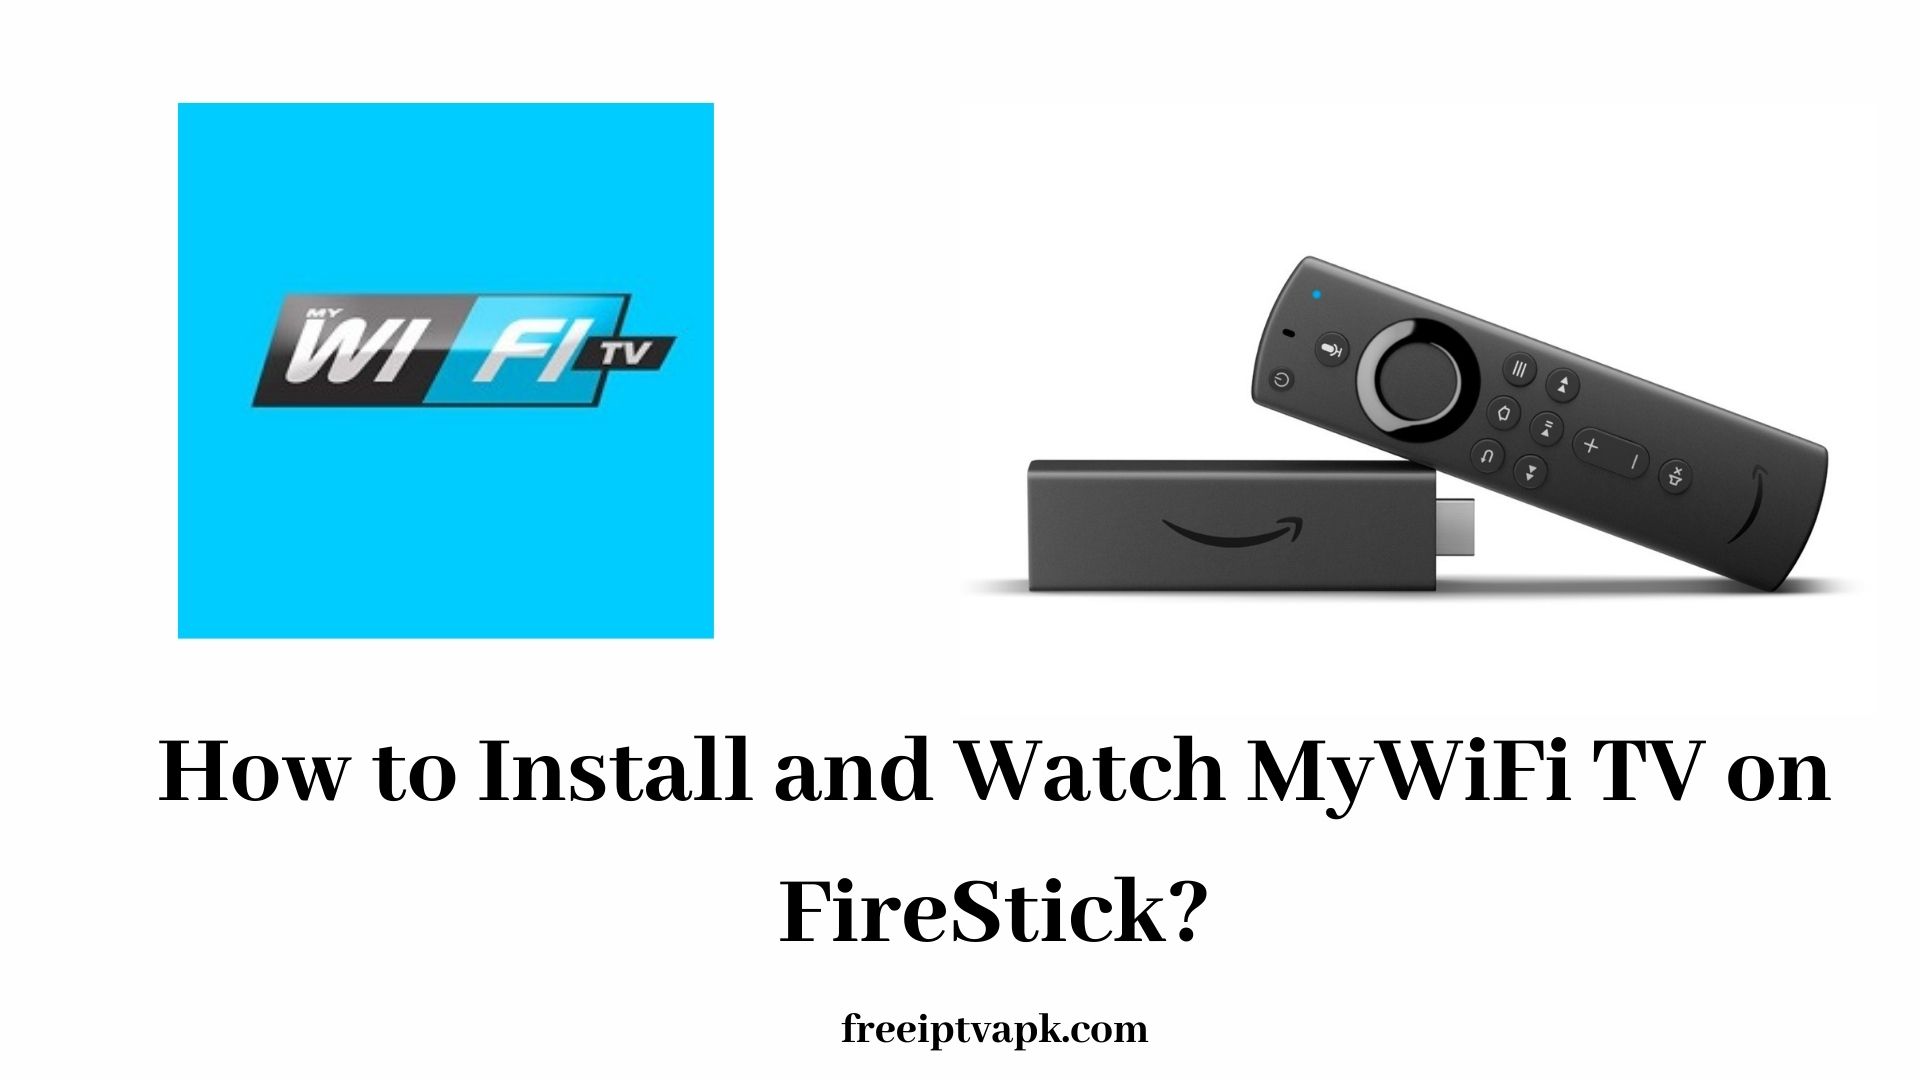 MyWiFi TV on FireStick